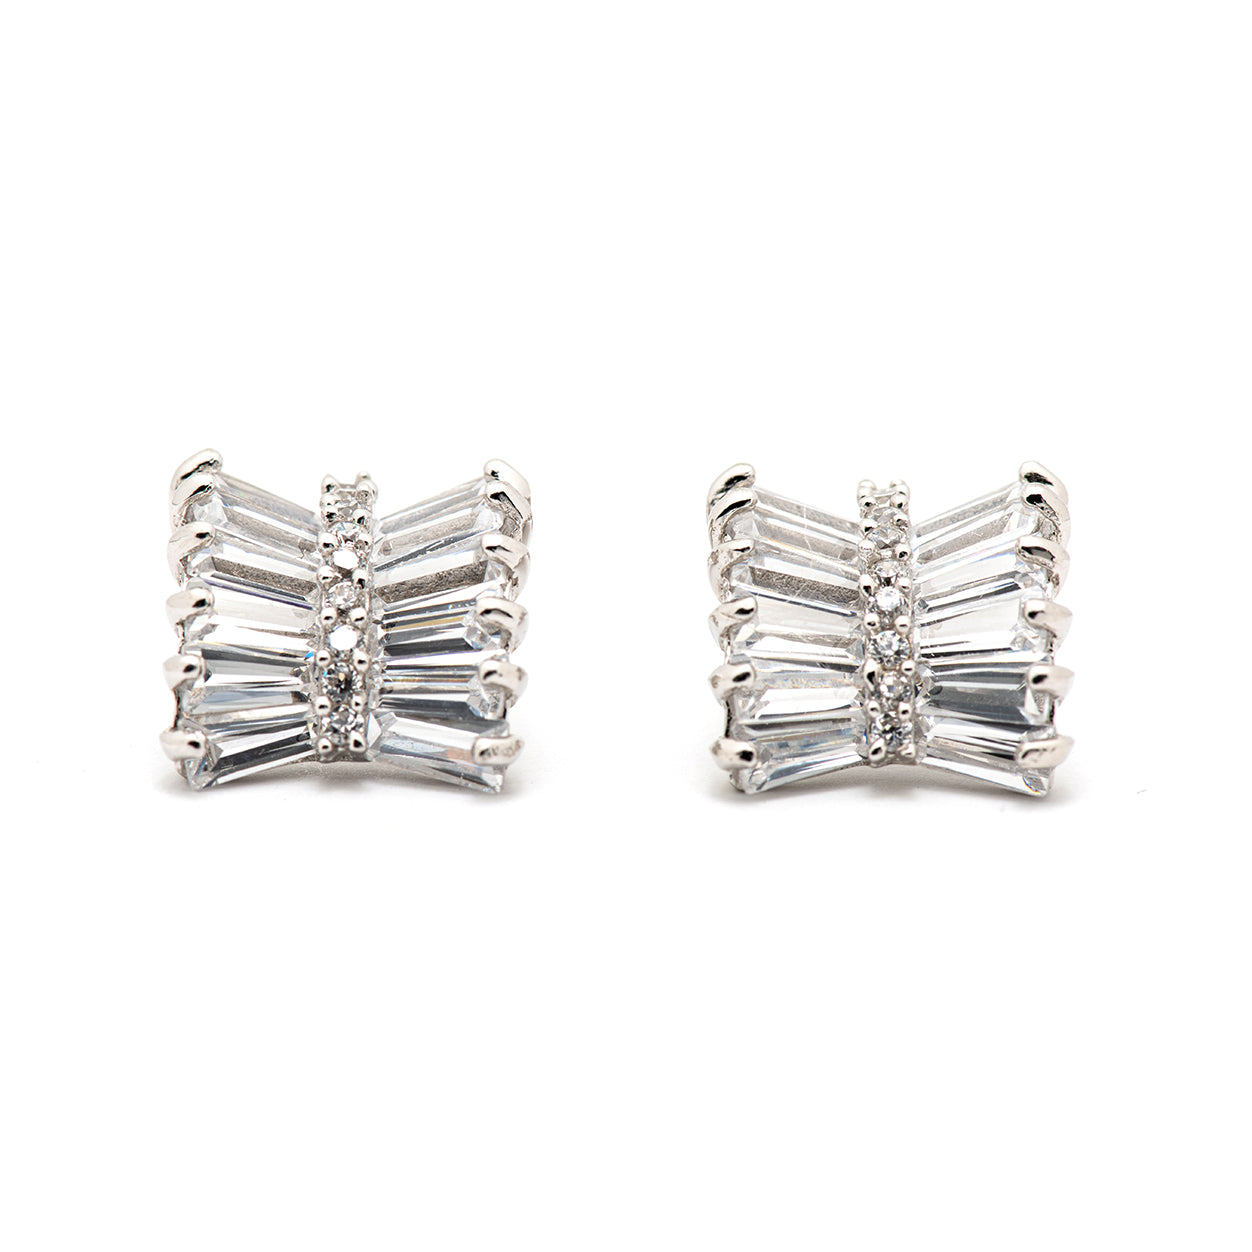 DK-925-113 sterling silver clear earrings